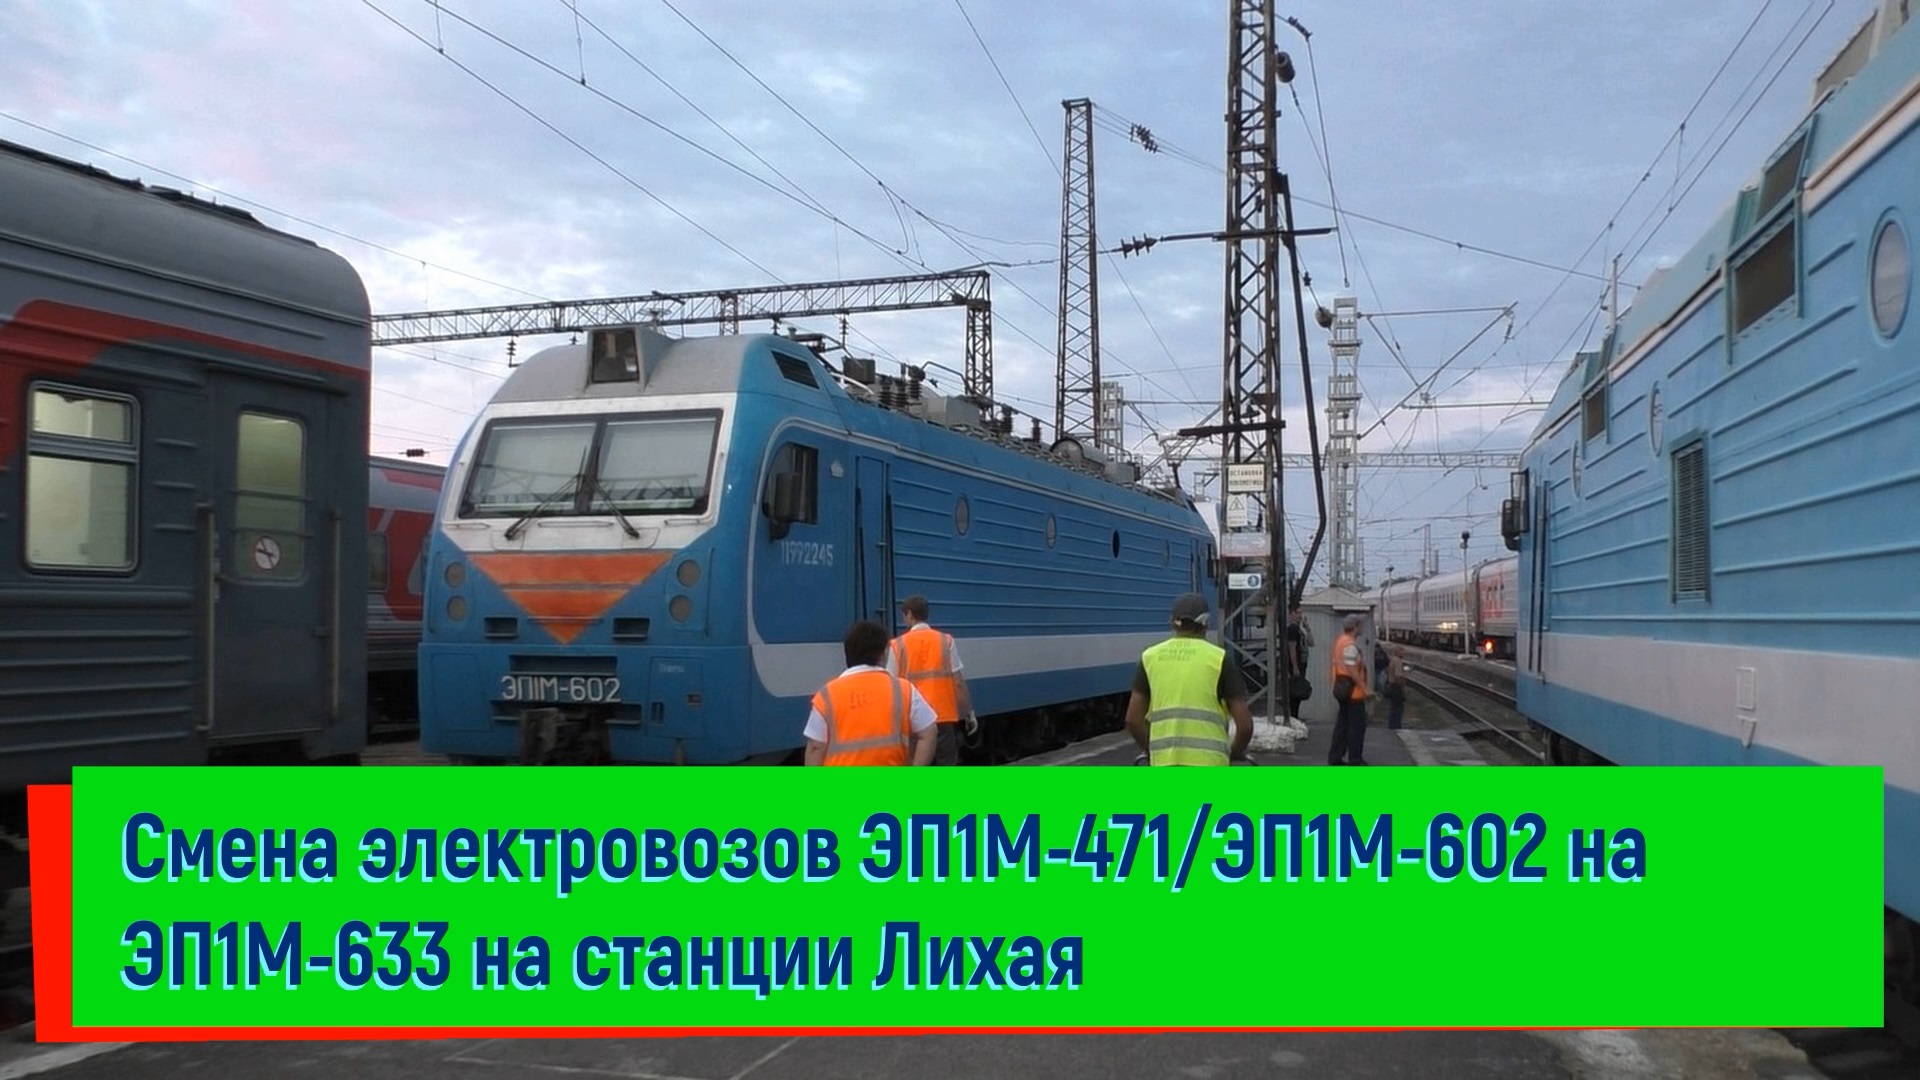 Смена электровозов ЭП1М-471/ЭП1М-602 на ЭП1М-633 на станции Лихая Поезд №480 Сухум – Санкт-Петербург